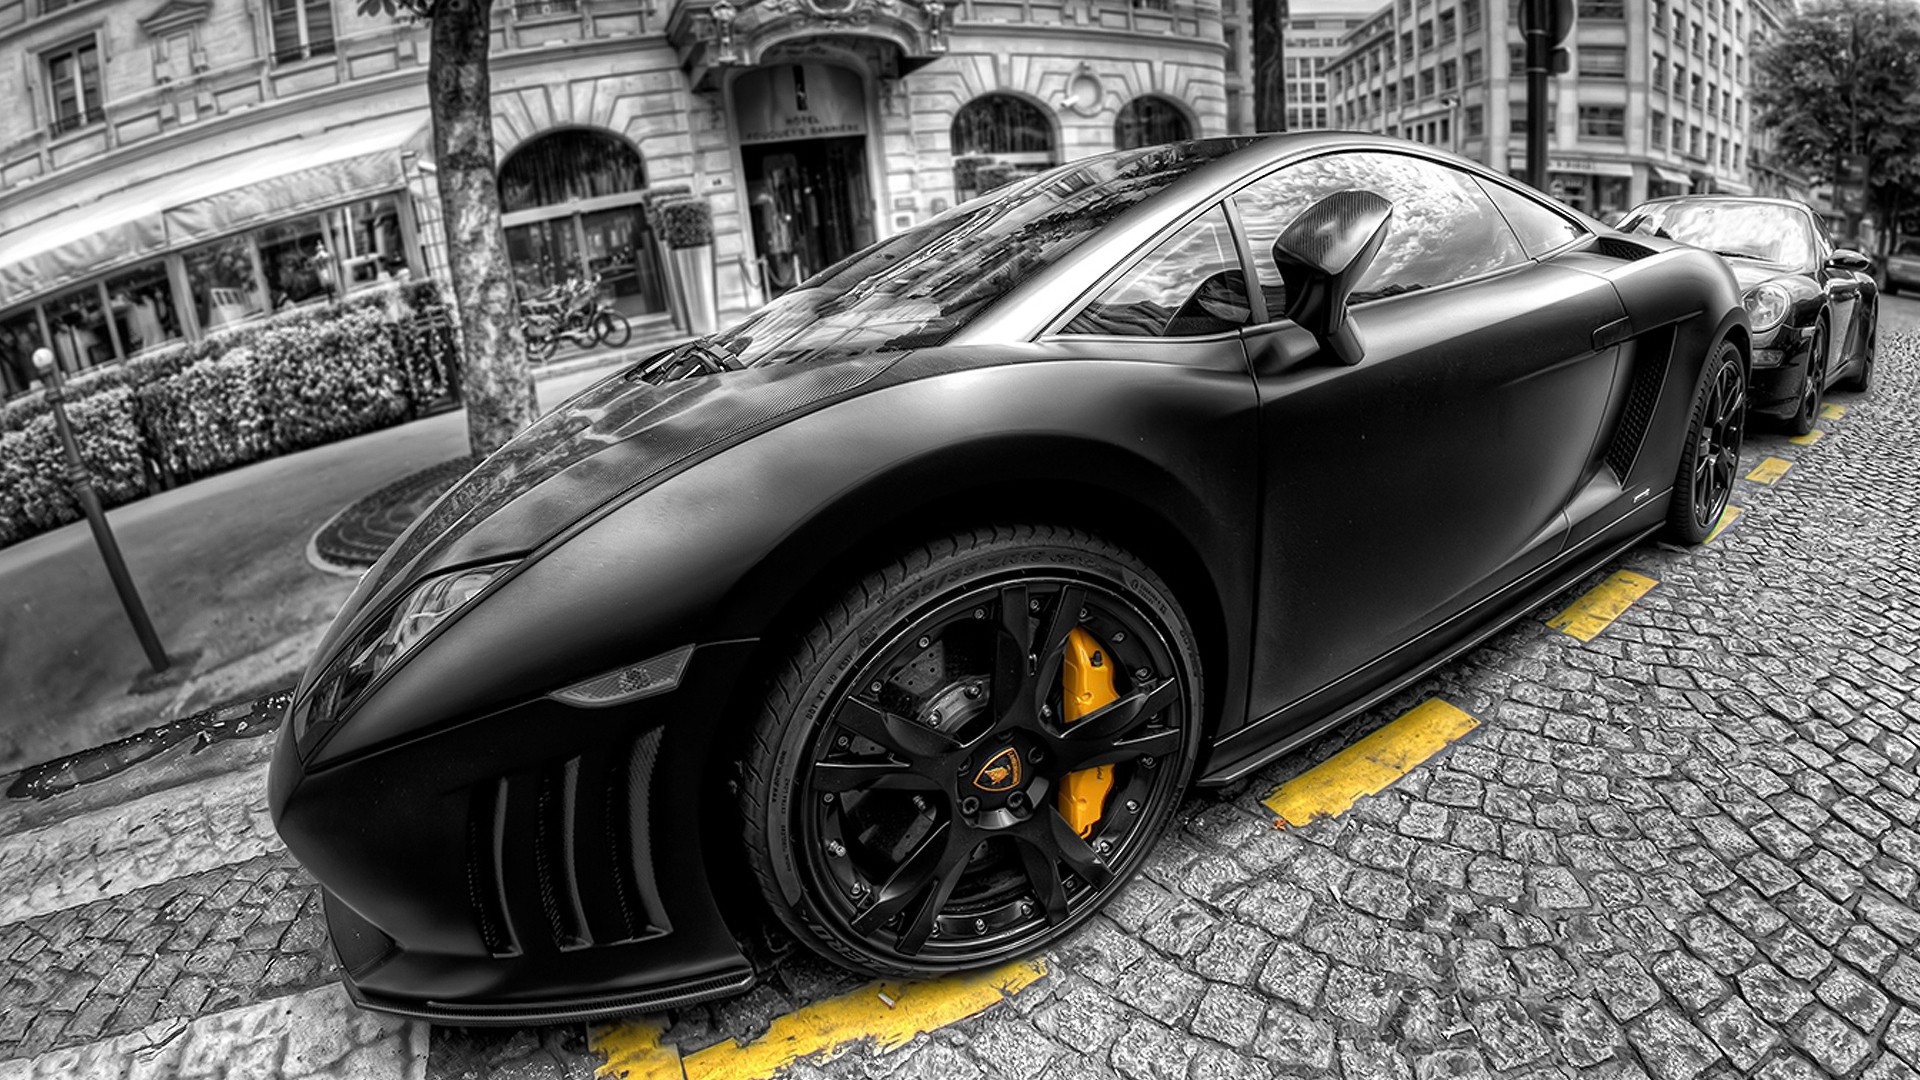 Черный Lamborghini на желтой разметке в Париже